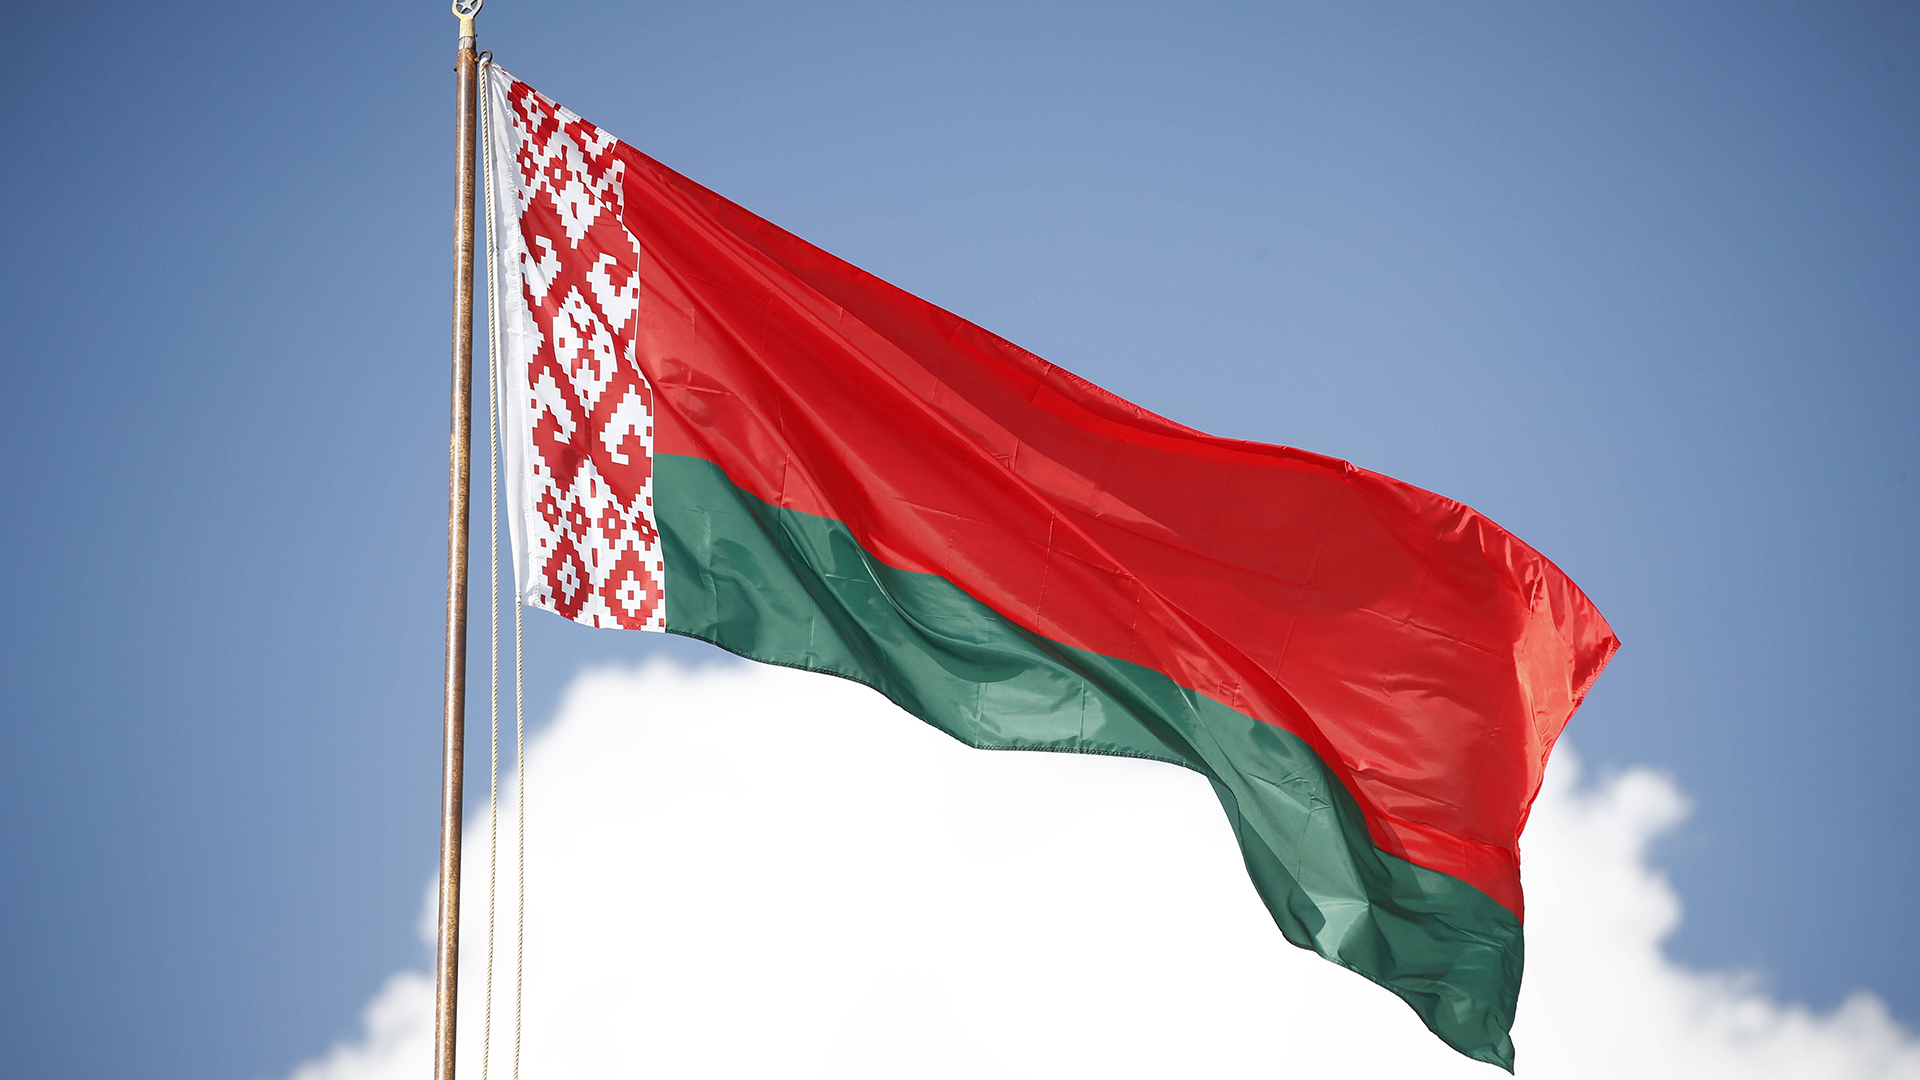 Flagge von Belarus | imago images/ITAR-TASS